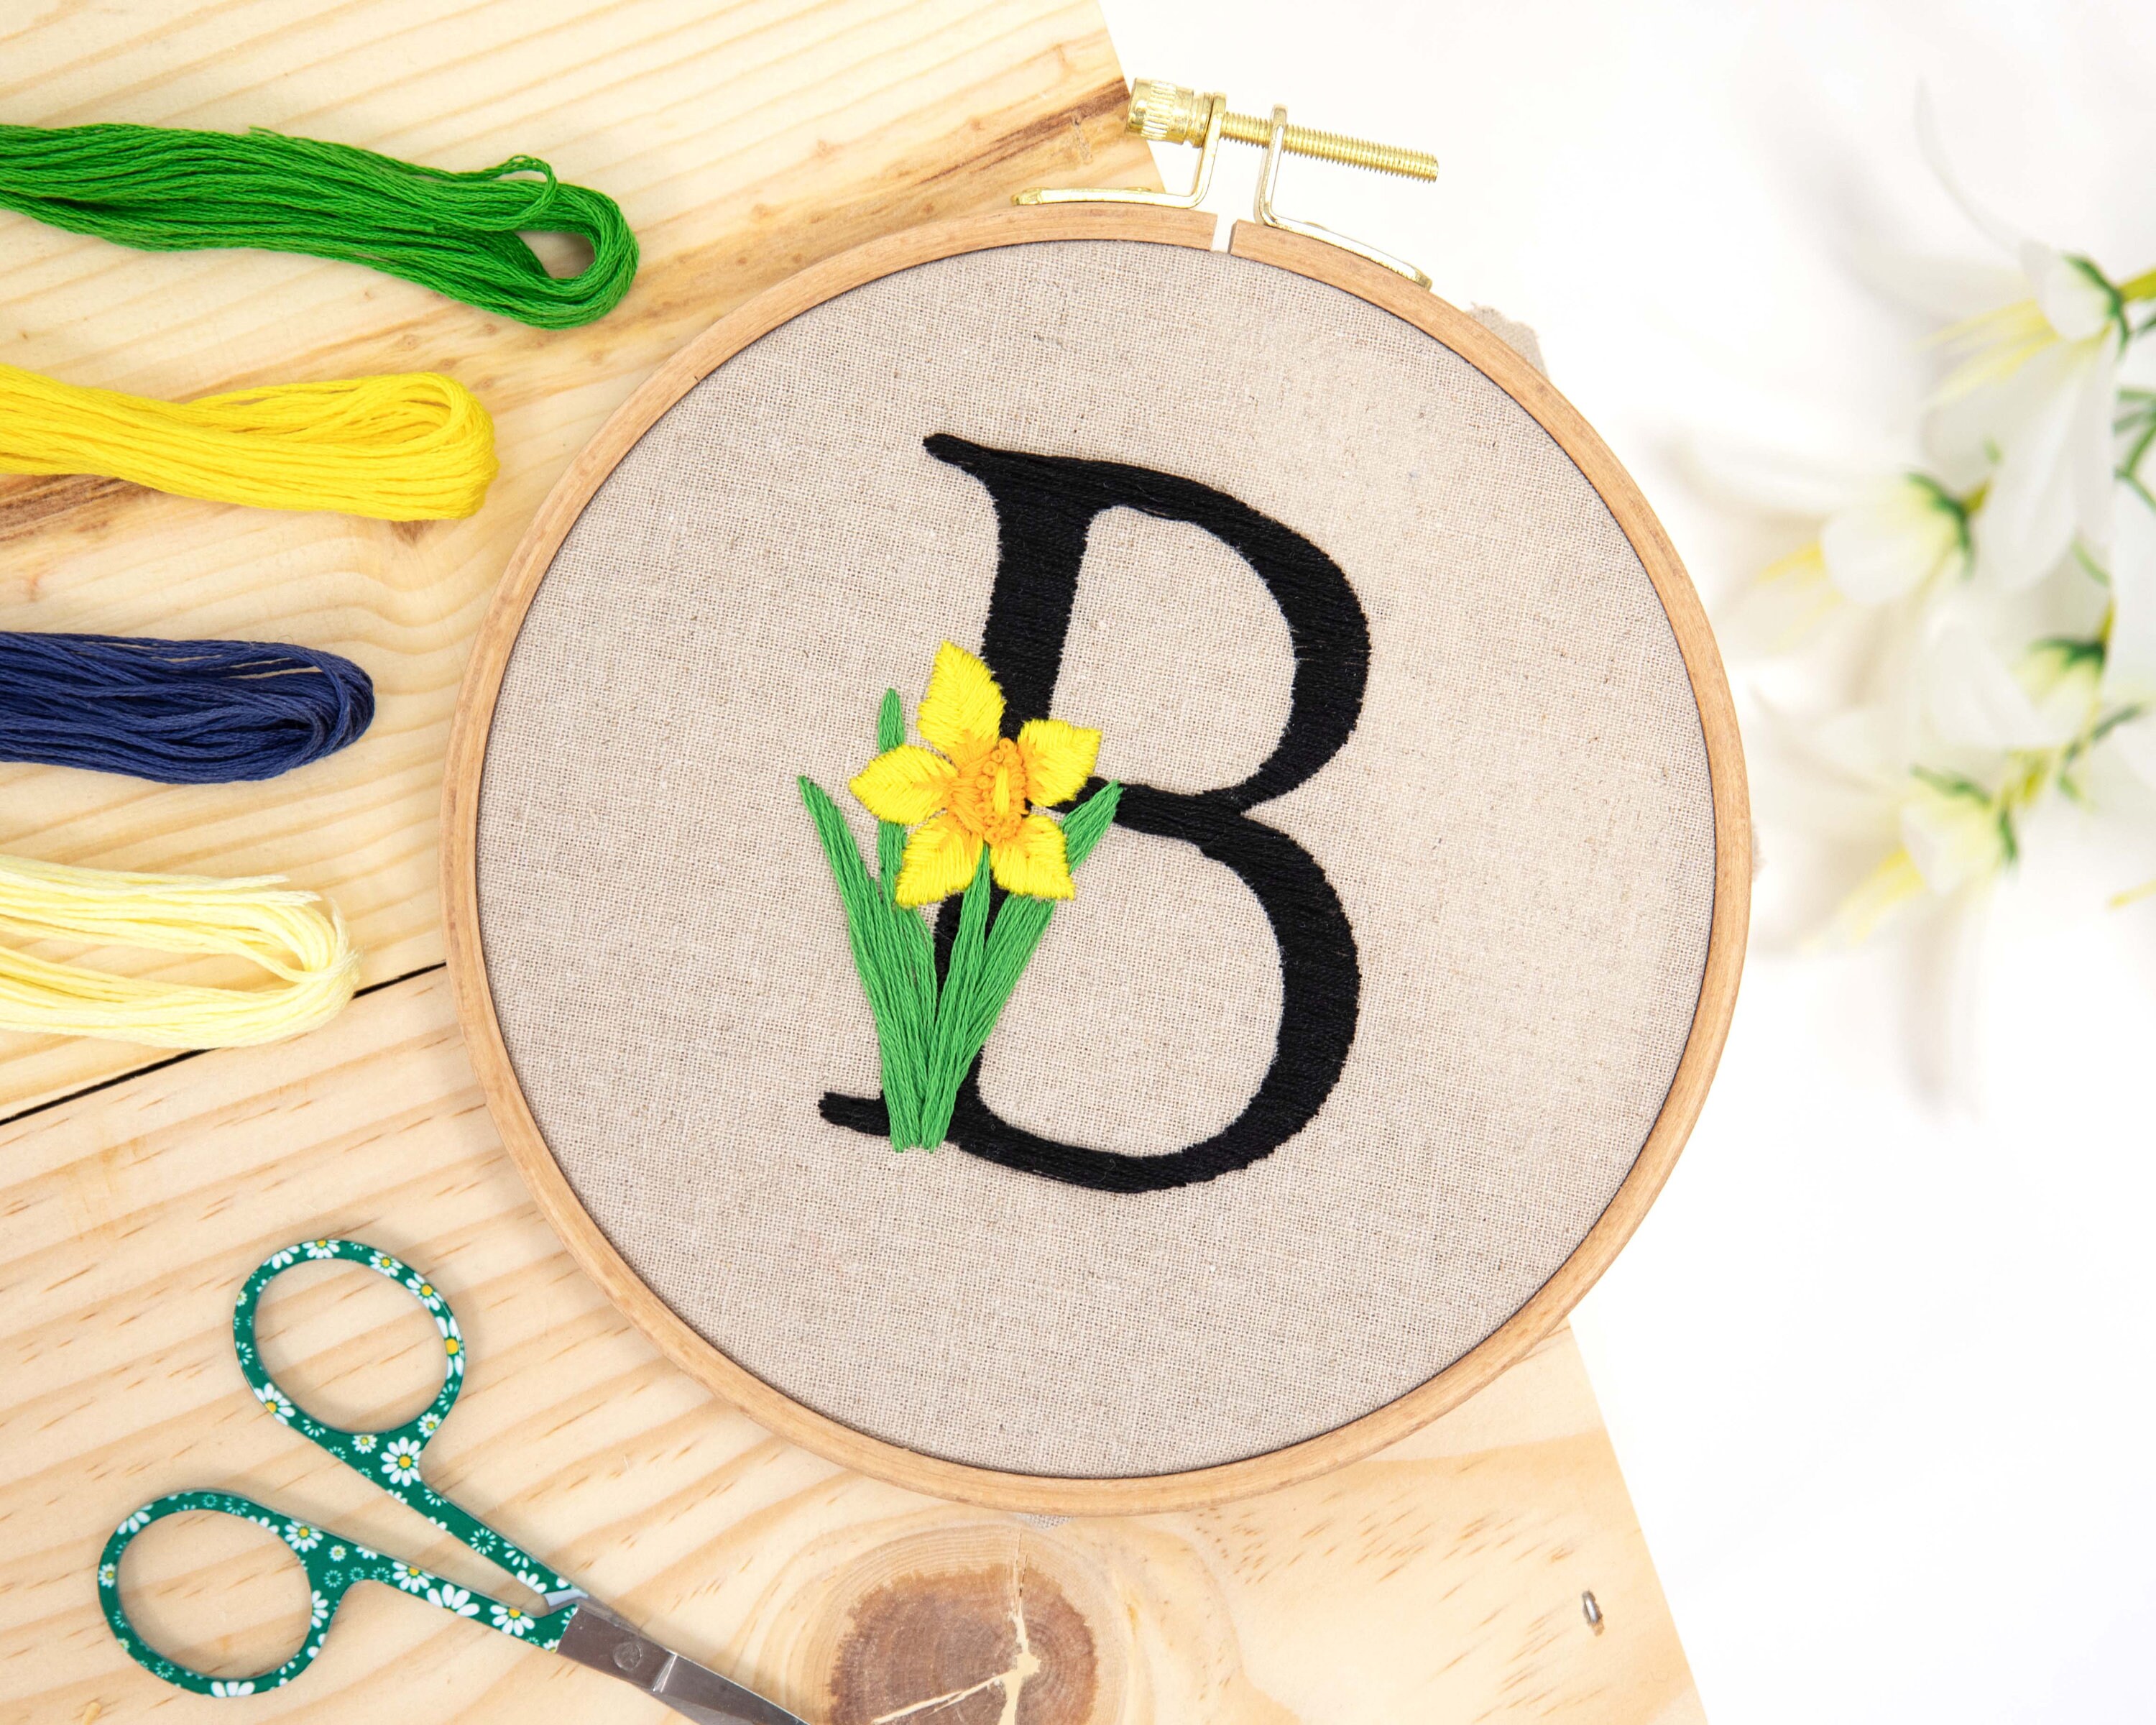 Garden Flowers, Beginner Embroidery Kit, Easy Embroidery Kit for Beginners,  Embroidery, Flower Embroidery Kit, Needlepoint Kits, DIY 